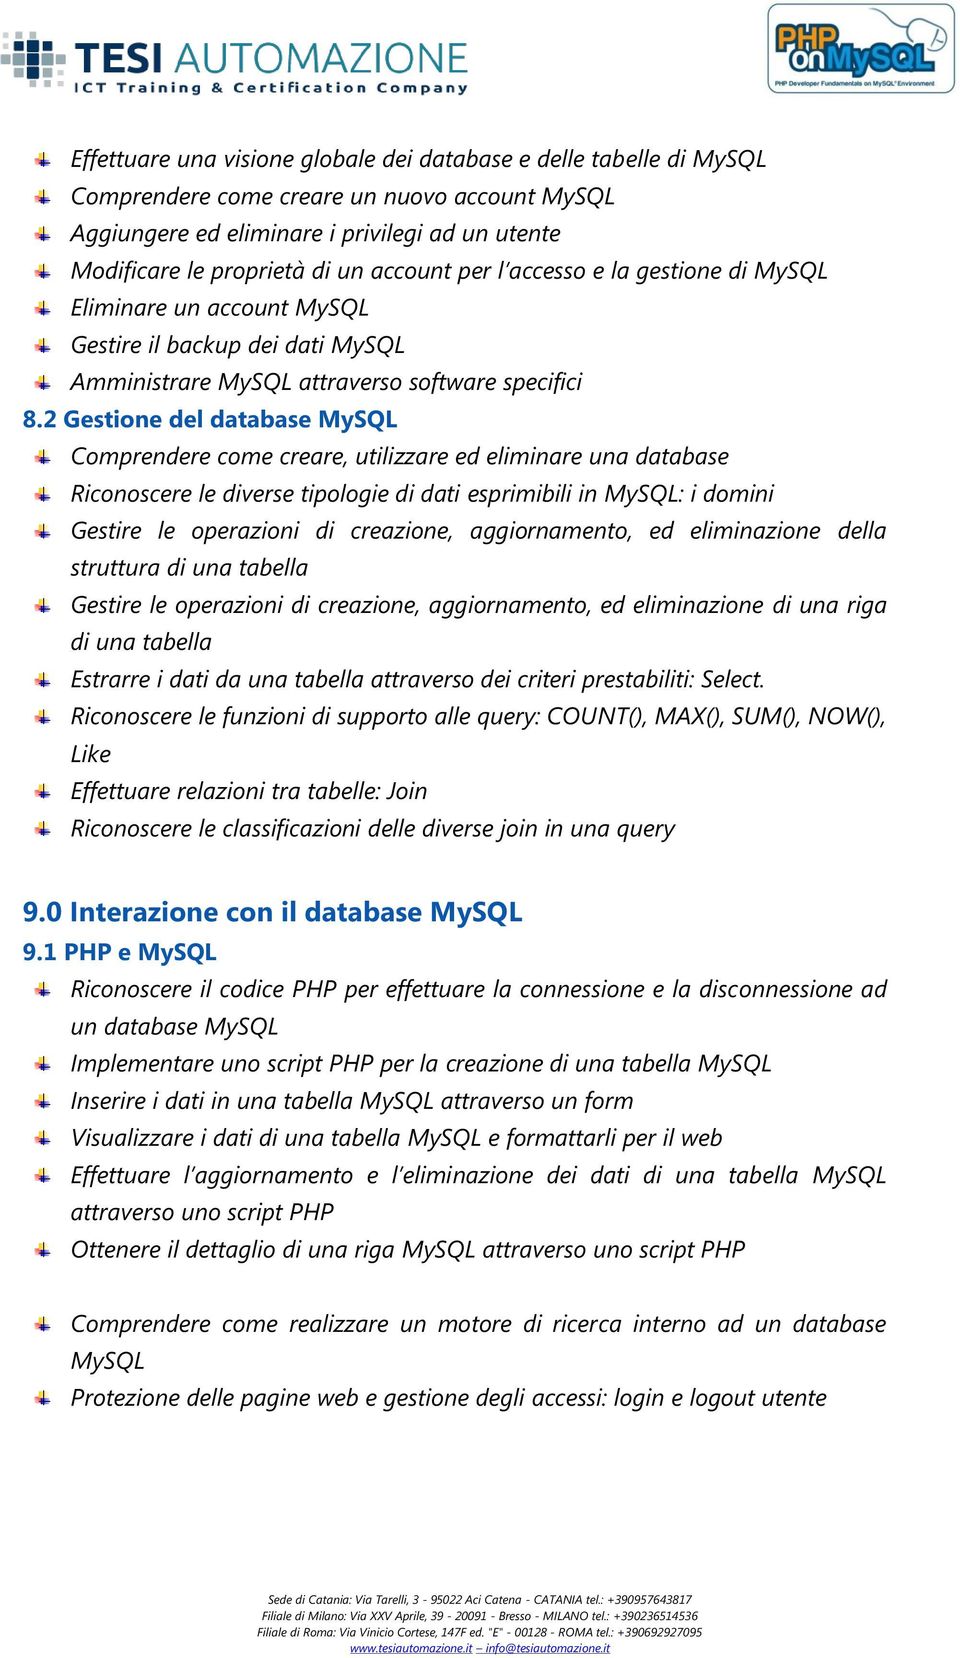 2 Gestione del database MySQL Comprendere come creare, utilizzare ed eliminare una database Riconoscere le diverse tipologie di dati esprimibili in MySQL: i domini Gestire le operazioni di creazione,